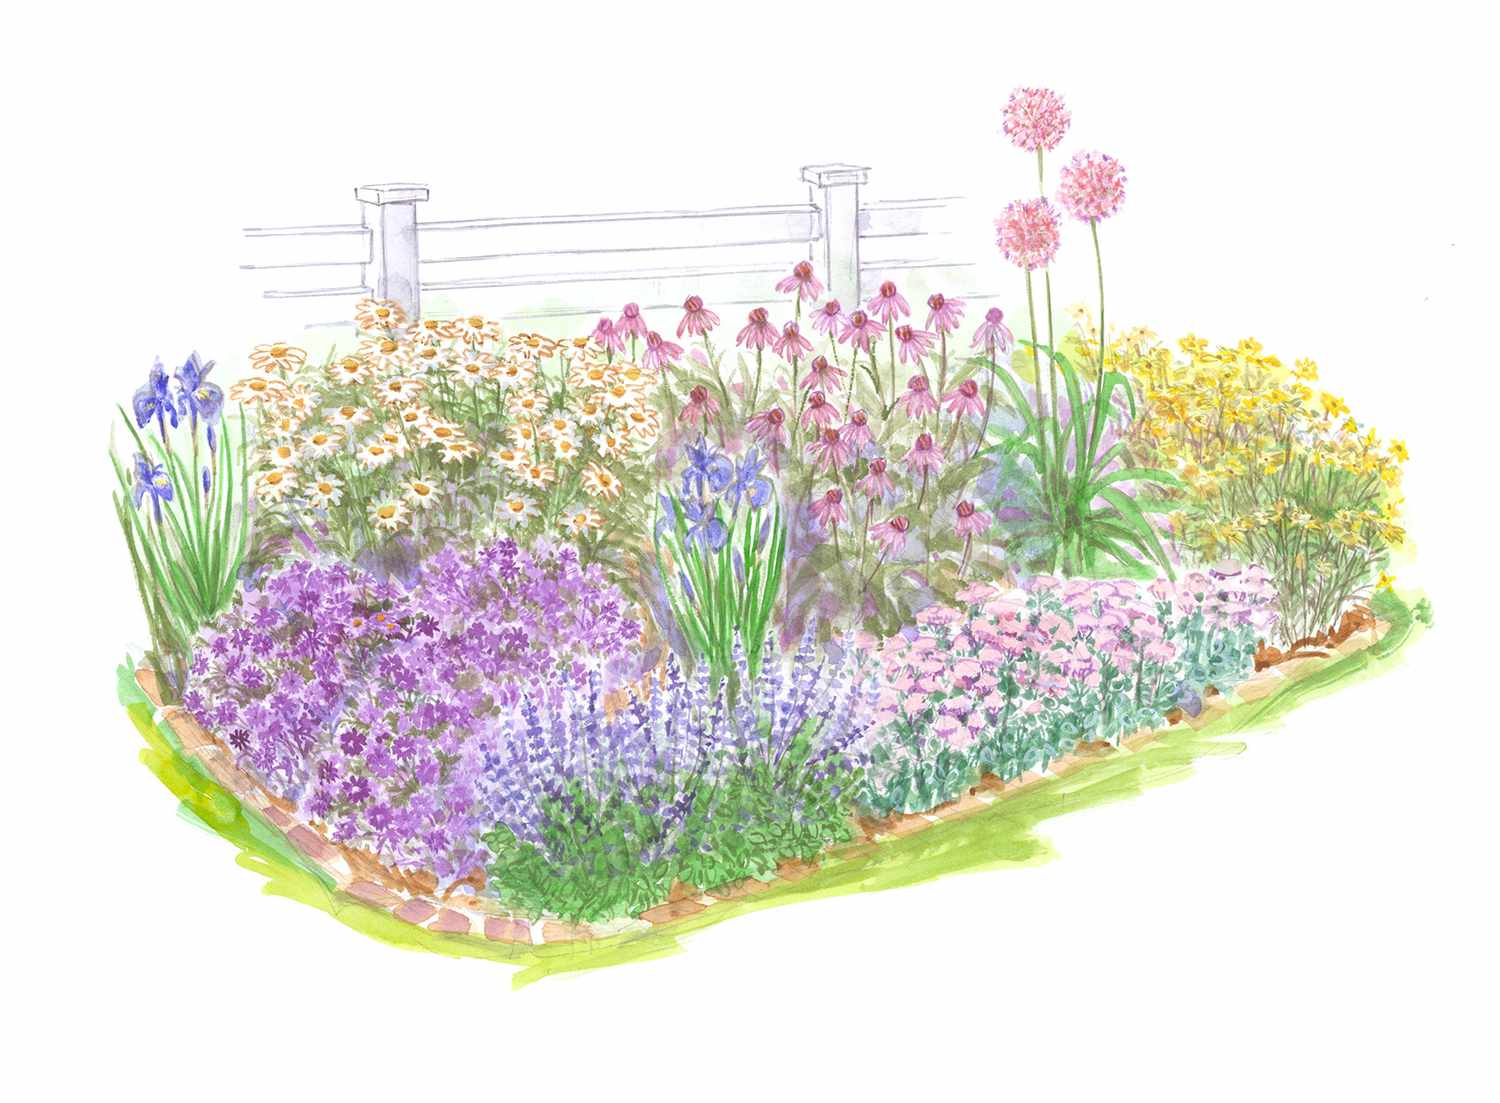 Full Sun Beginner Perennial Garden plan illustration